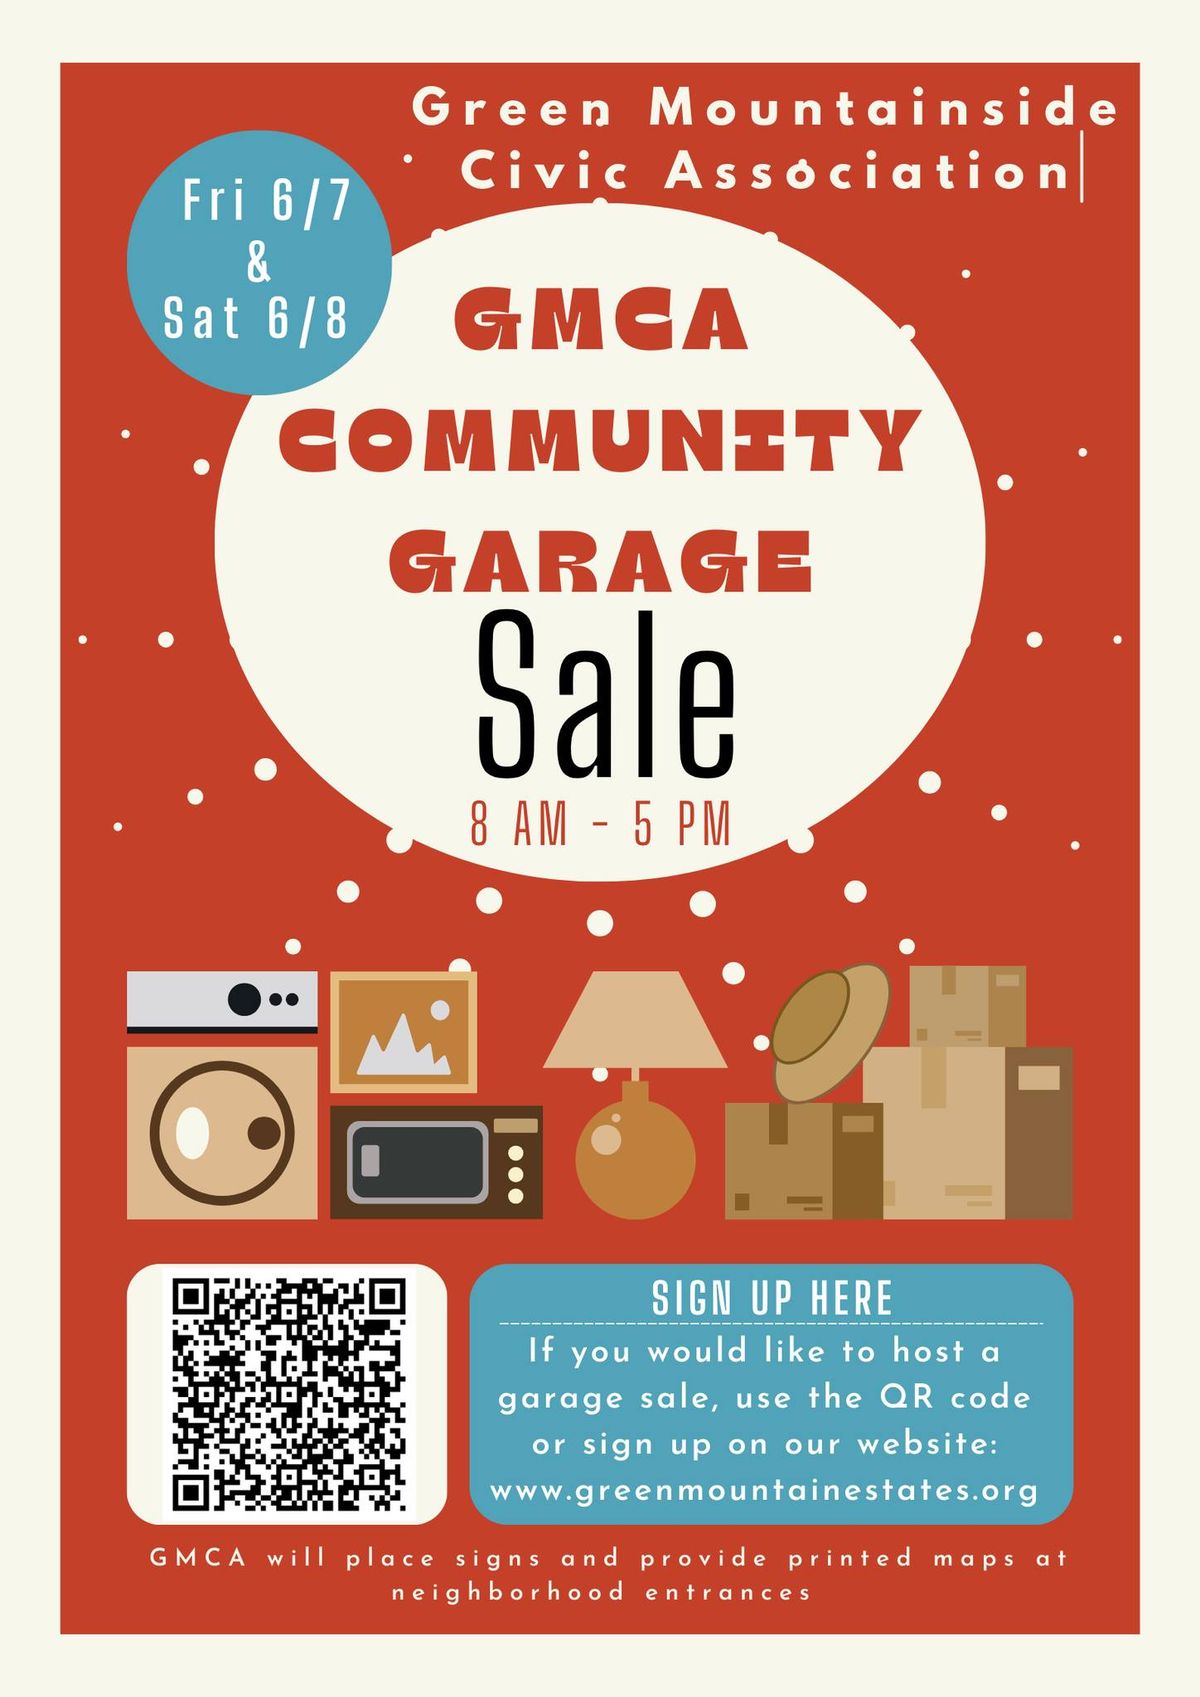 GMCA Community Garage Sale